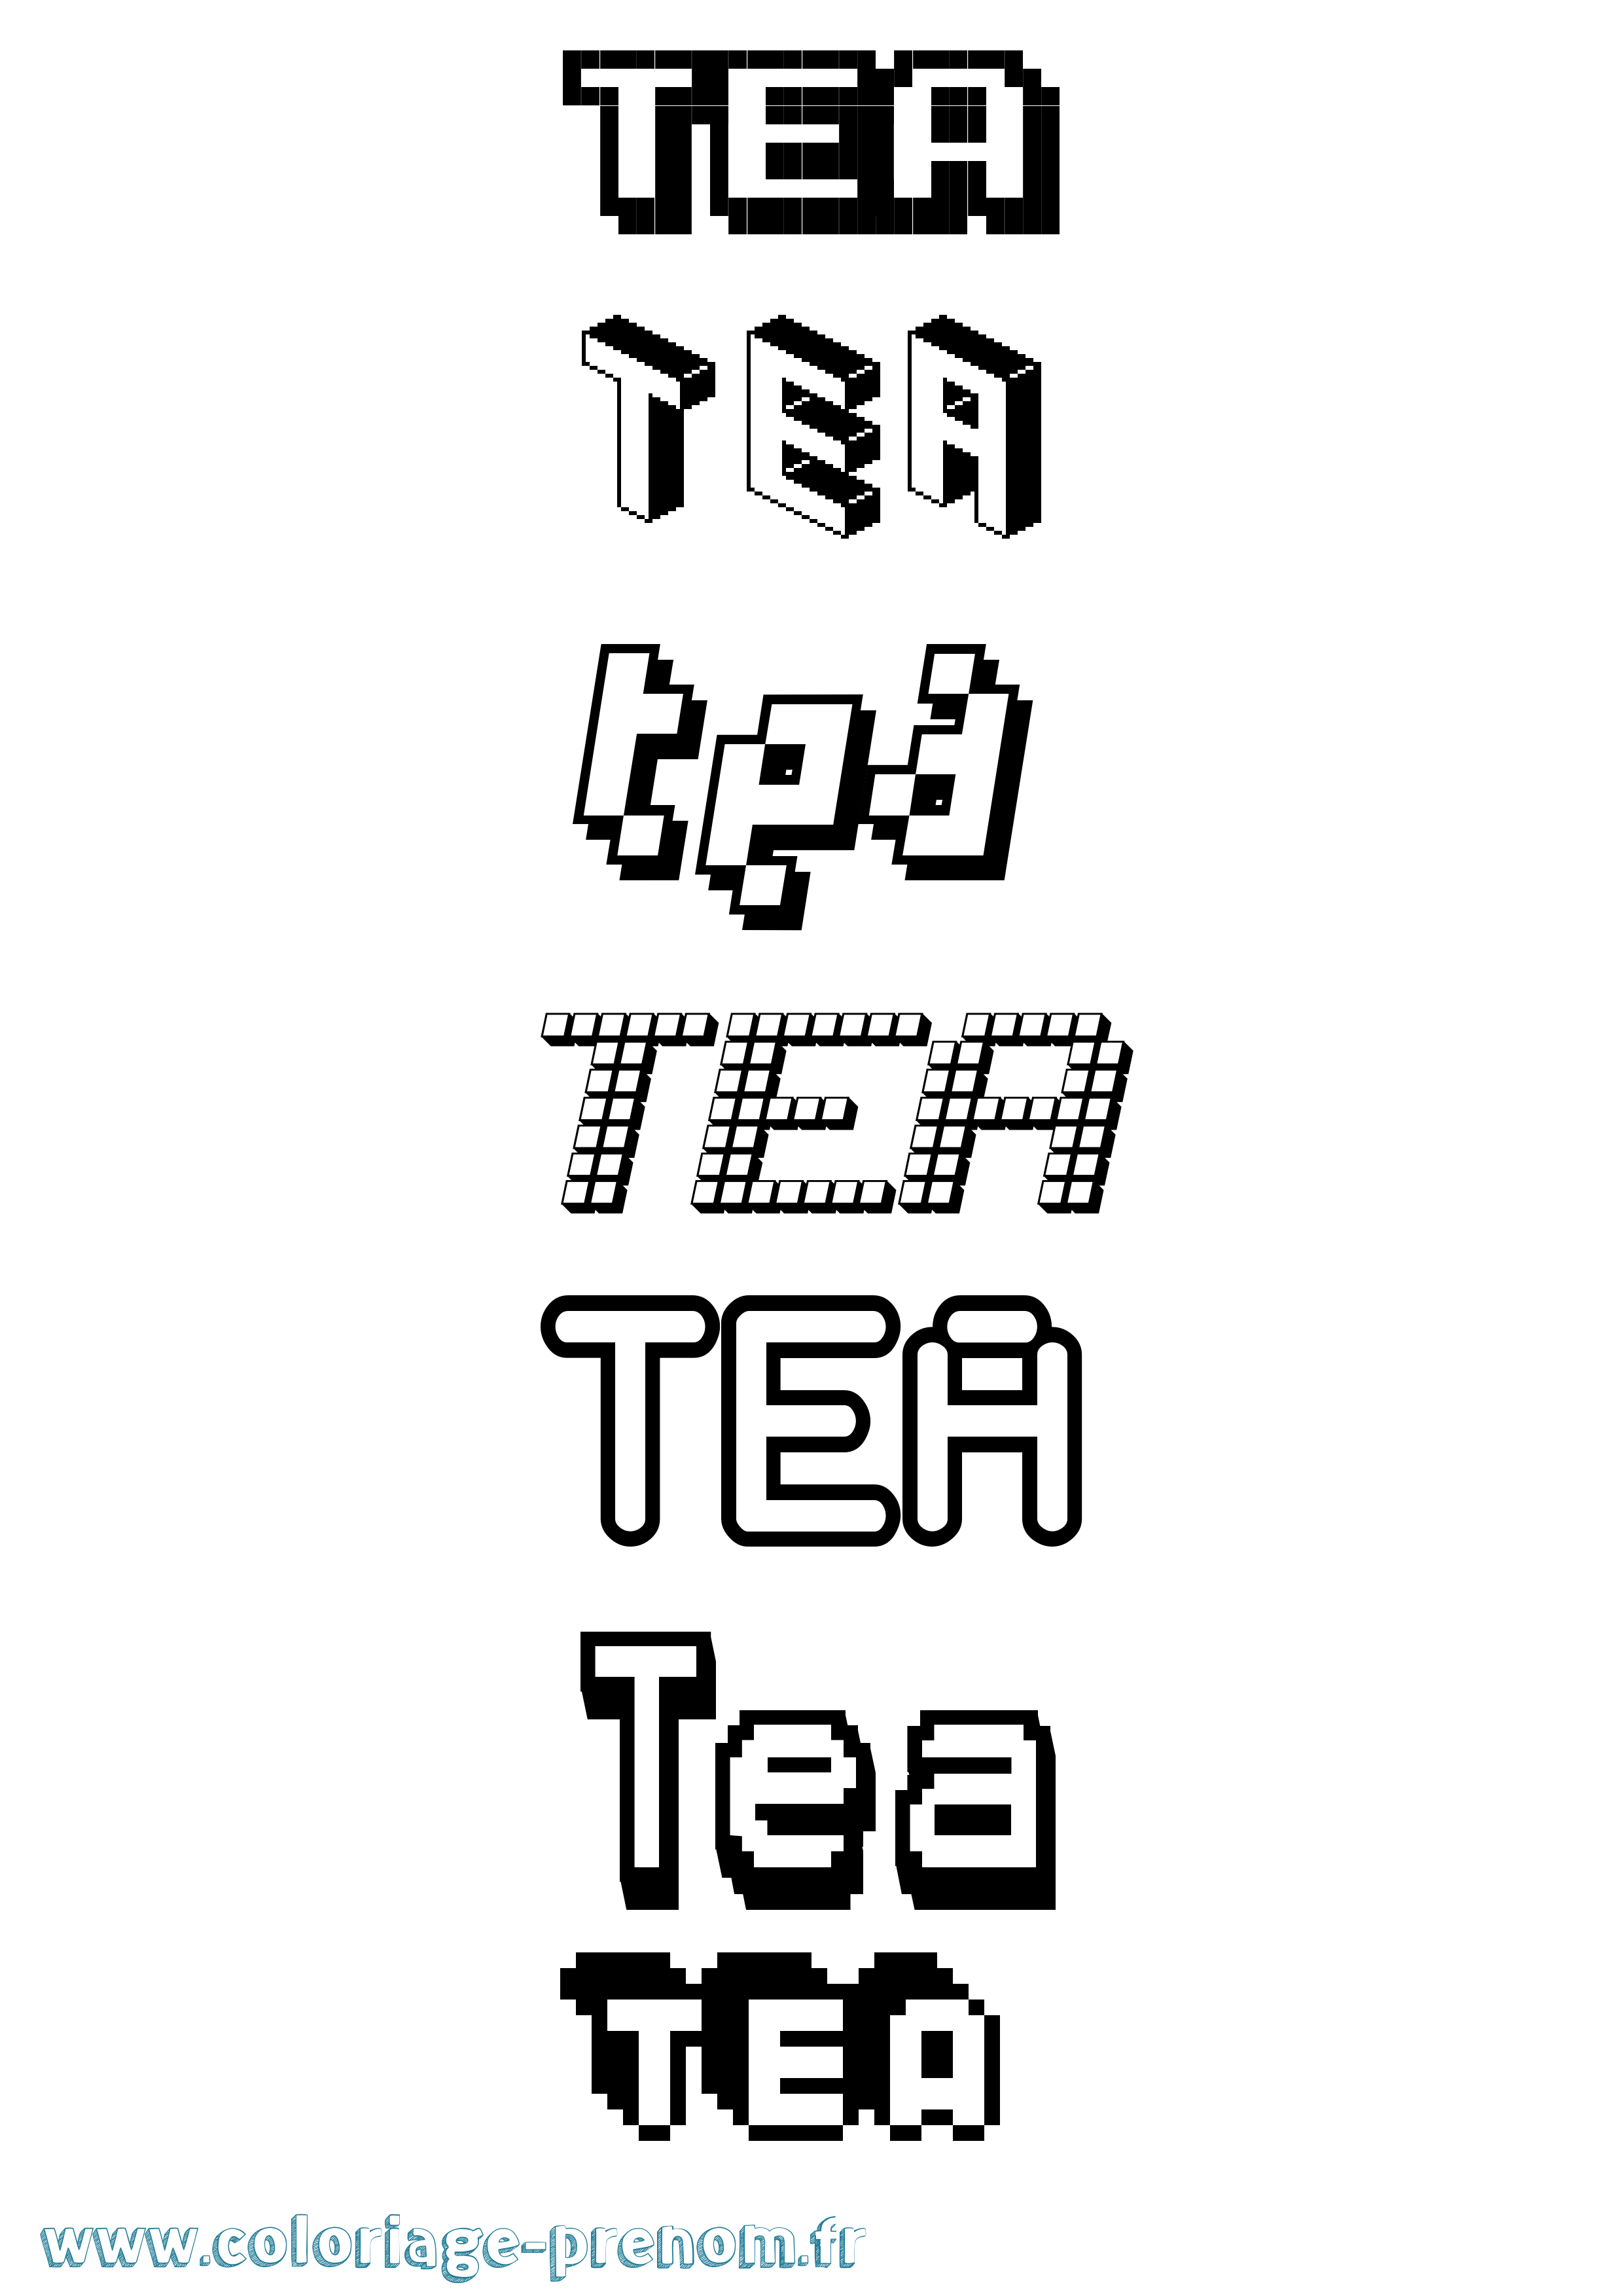 Coloriage prénom Tea Pixel